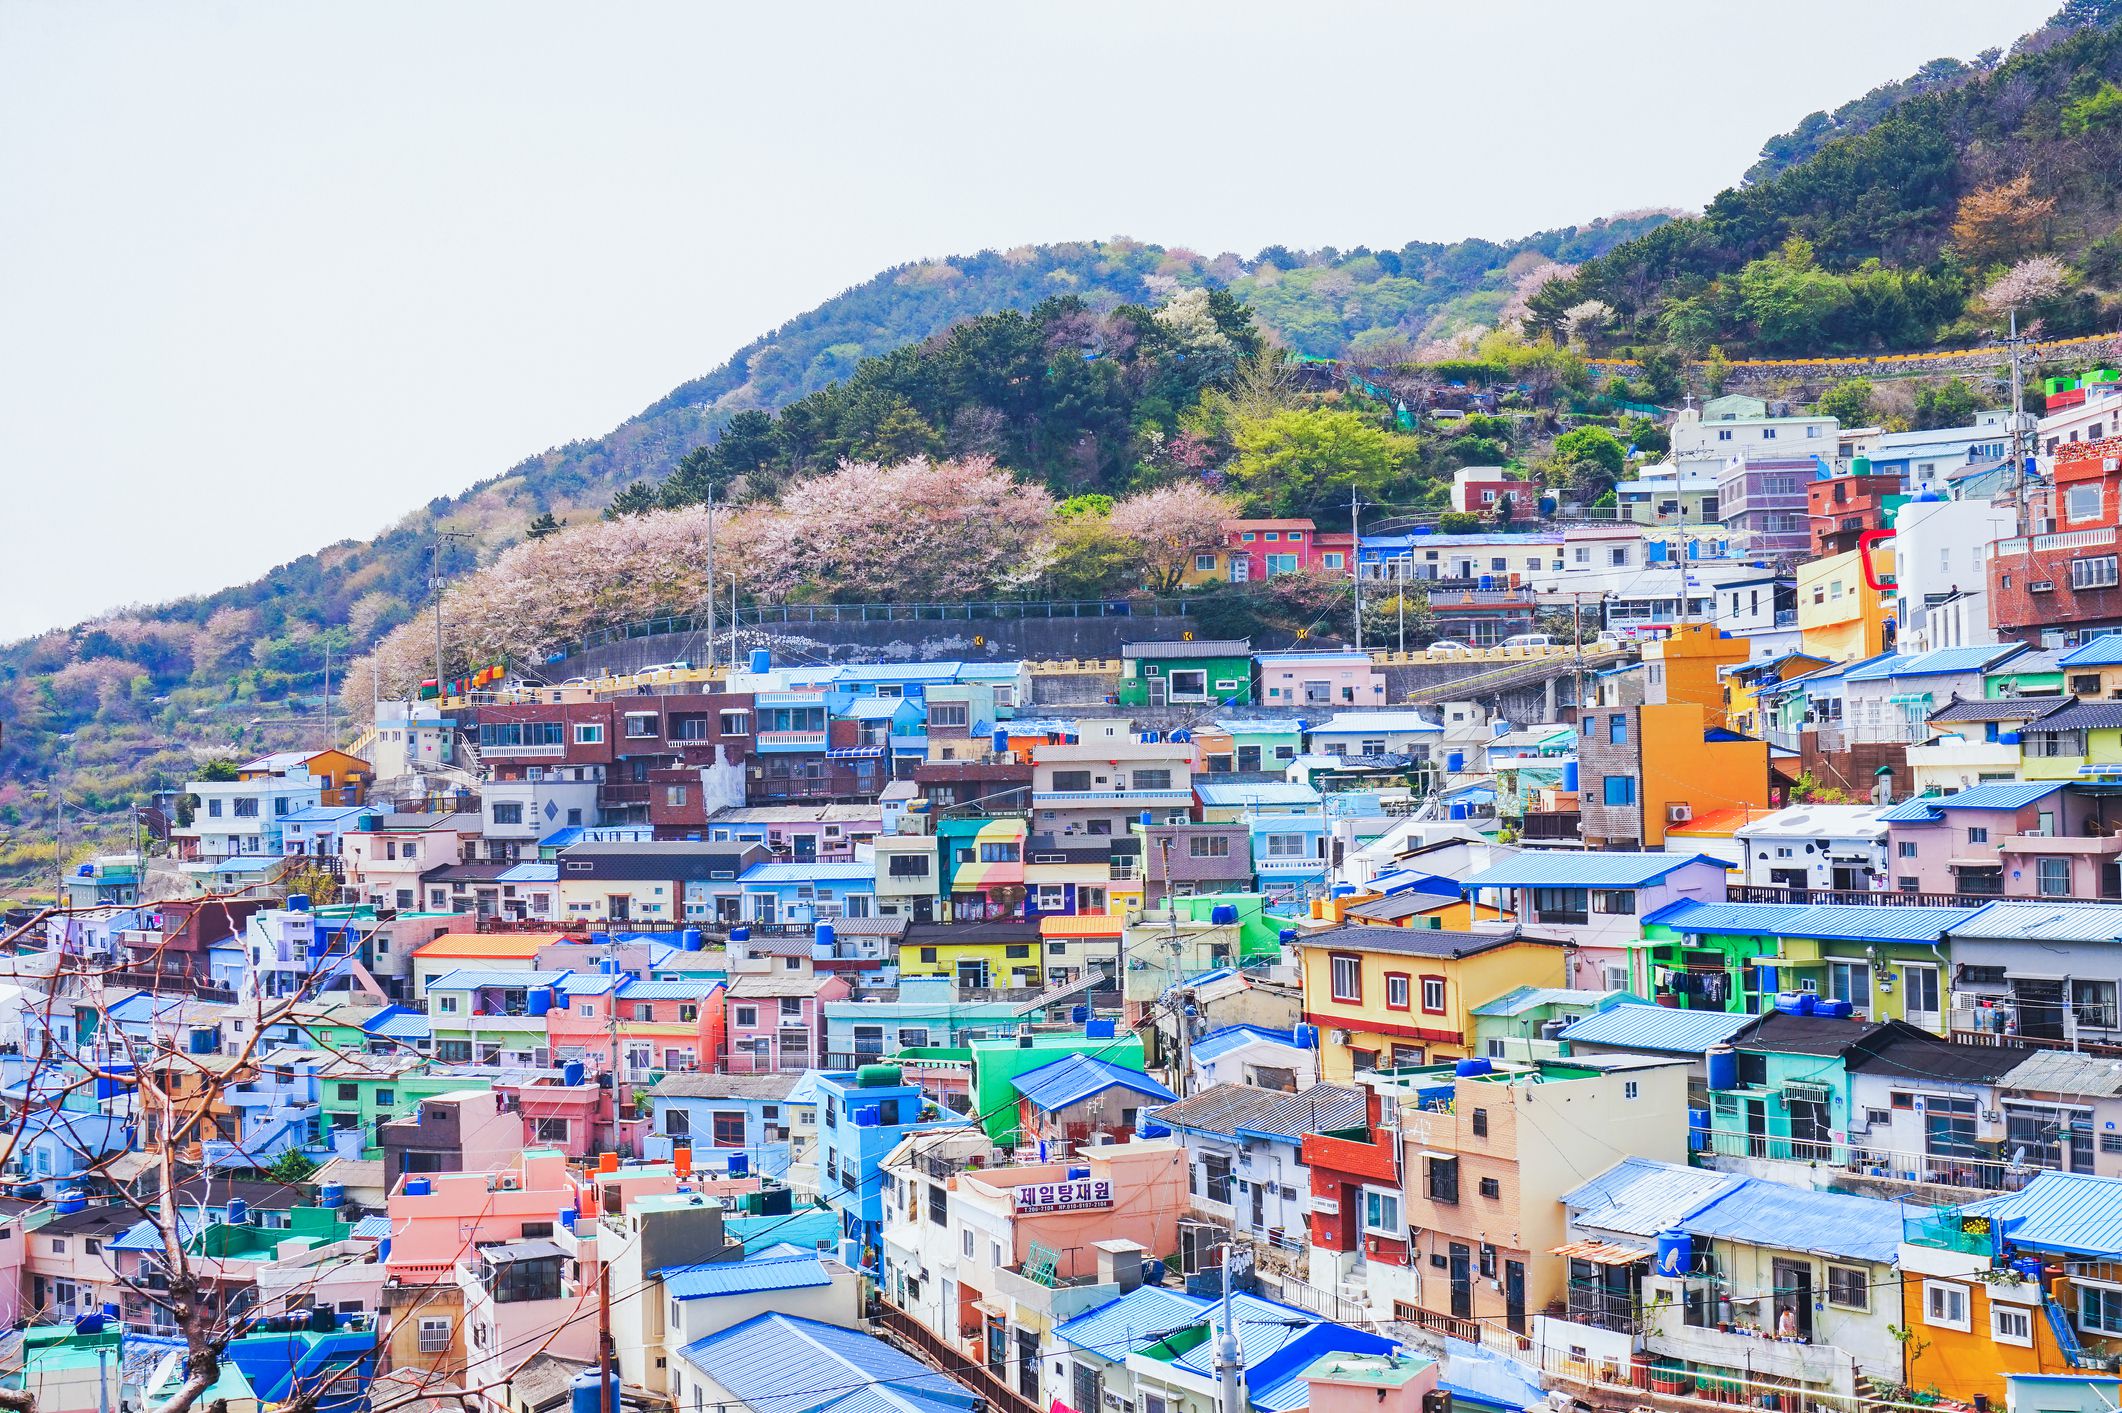 gamcheon-culture-village--busan--south-korea-1149825040-2bc1e16a08c14ee9add5aae5f0e8e9b9.jpg